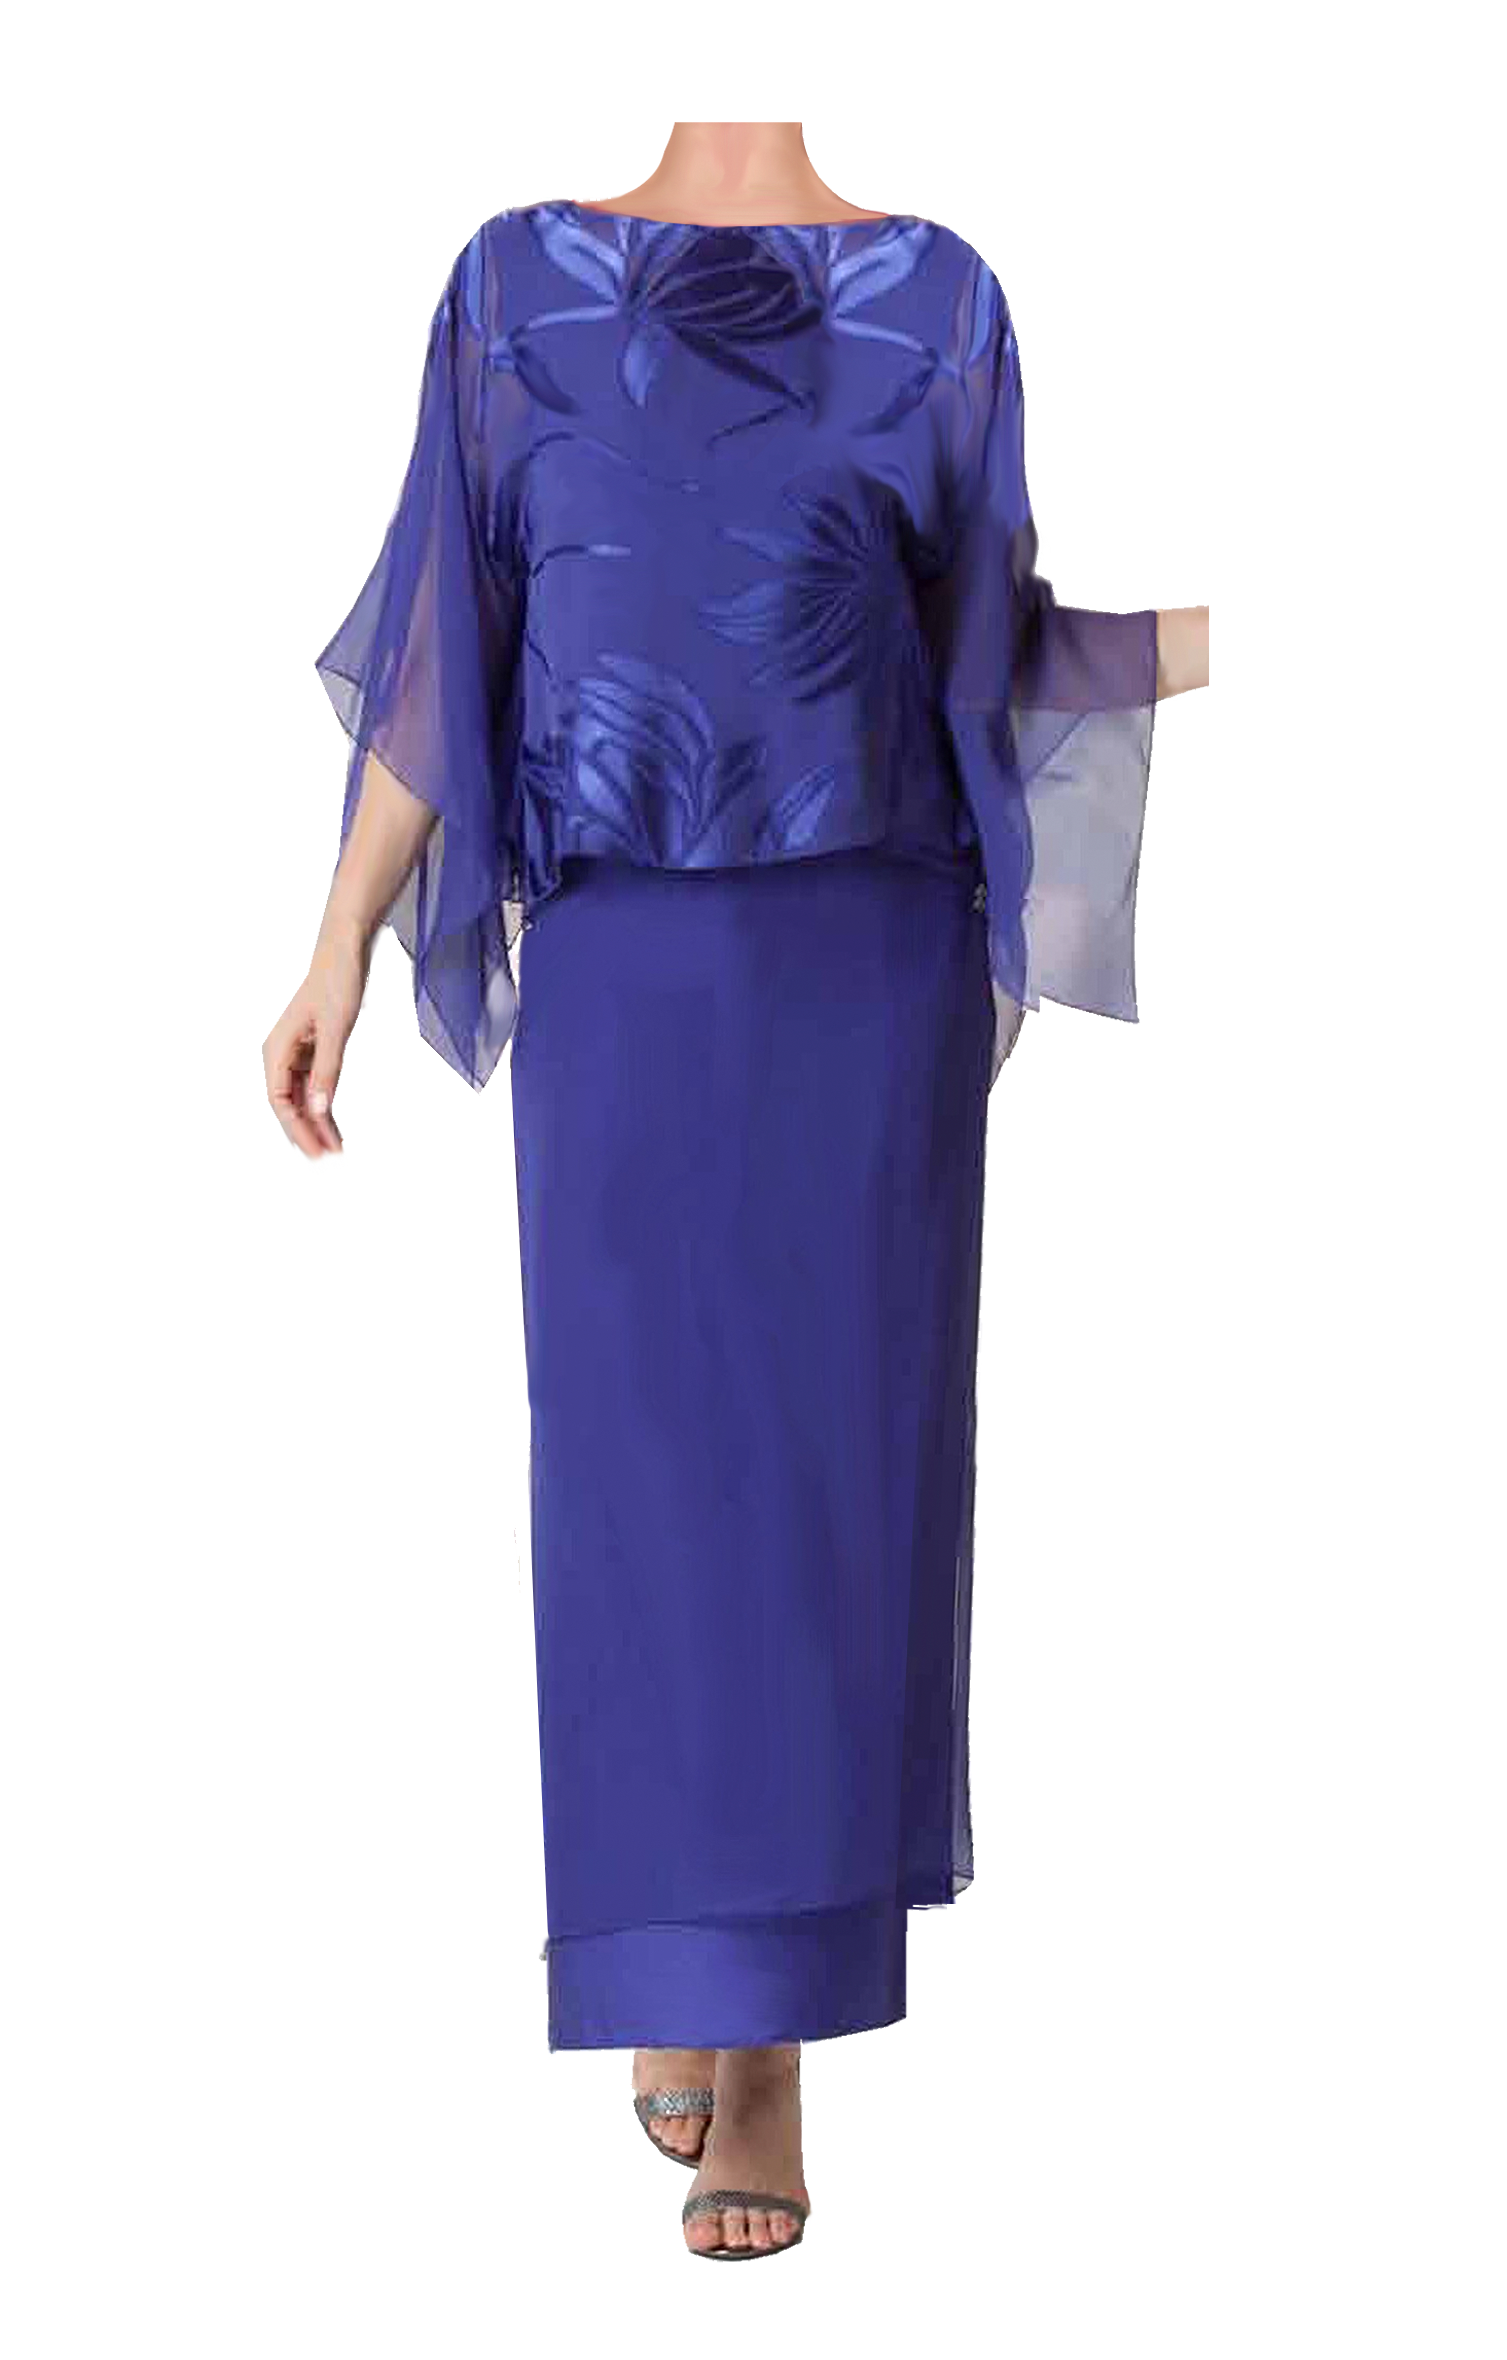 Silk Devore Kimono Top, Silk Camisole & Silk Plisse Skirt - K1803/S1503 - Sara Mique Evening Wear